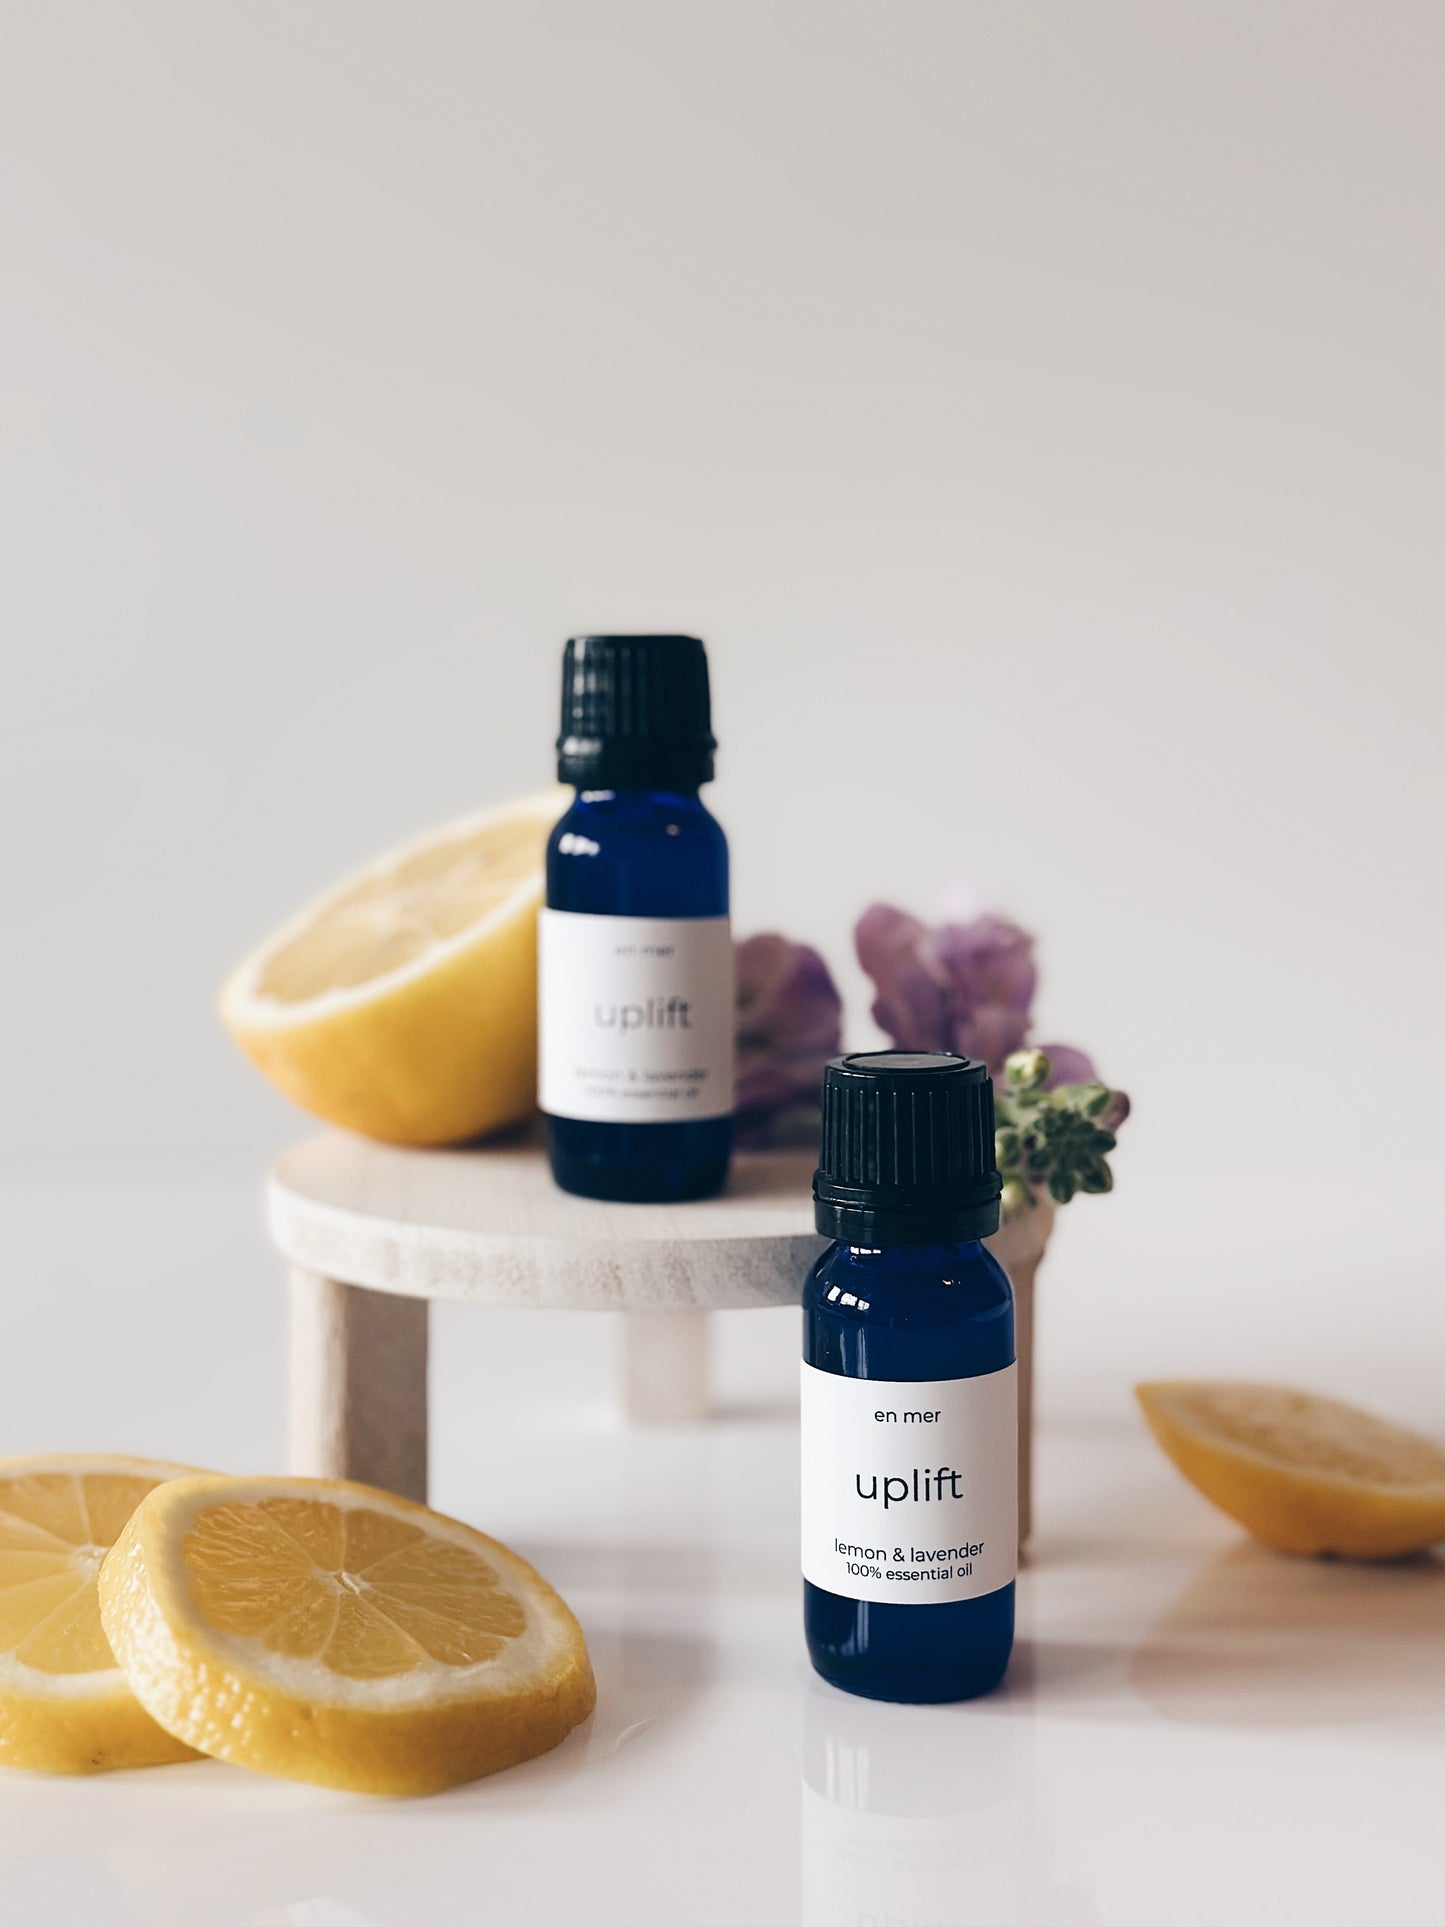 en mer | uplift | lemon & lavender essential oil